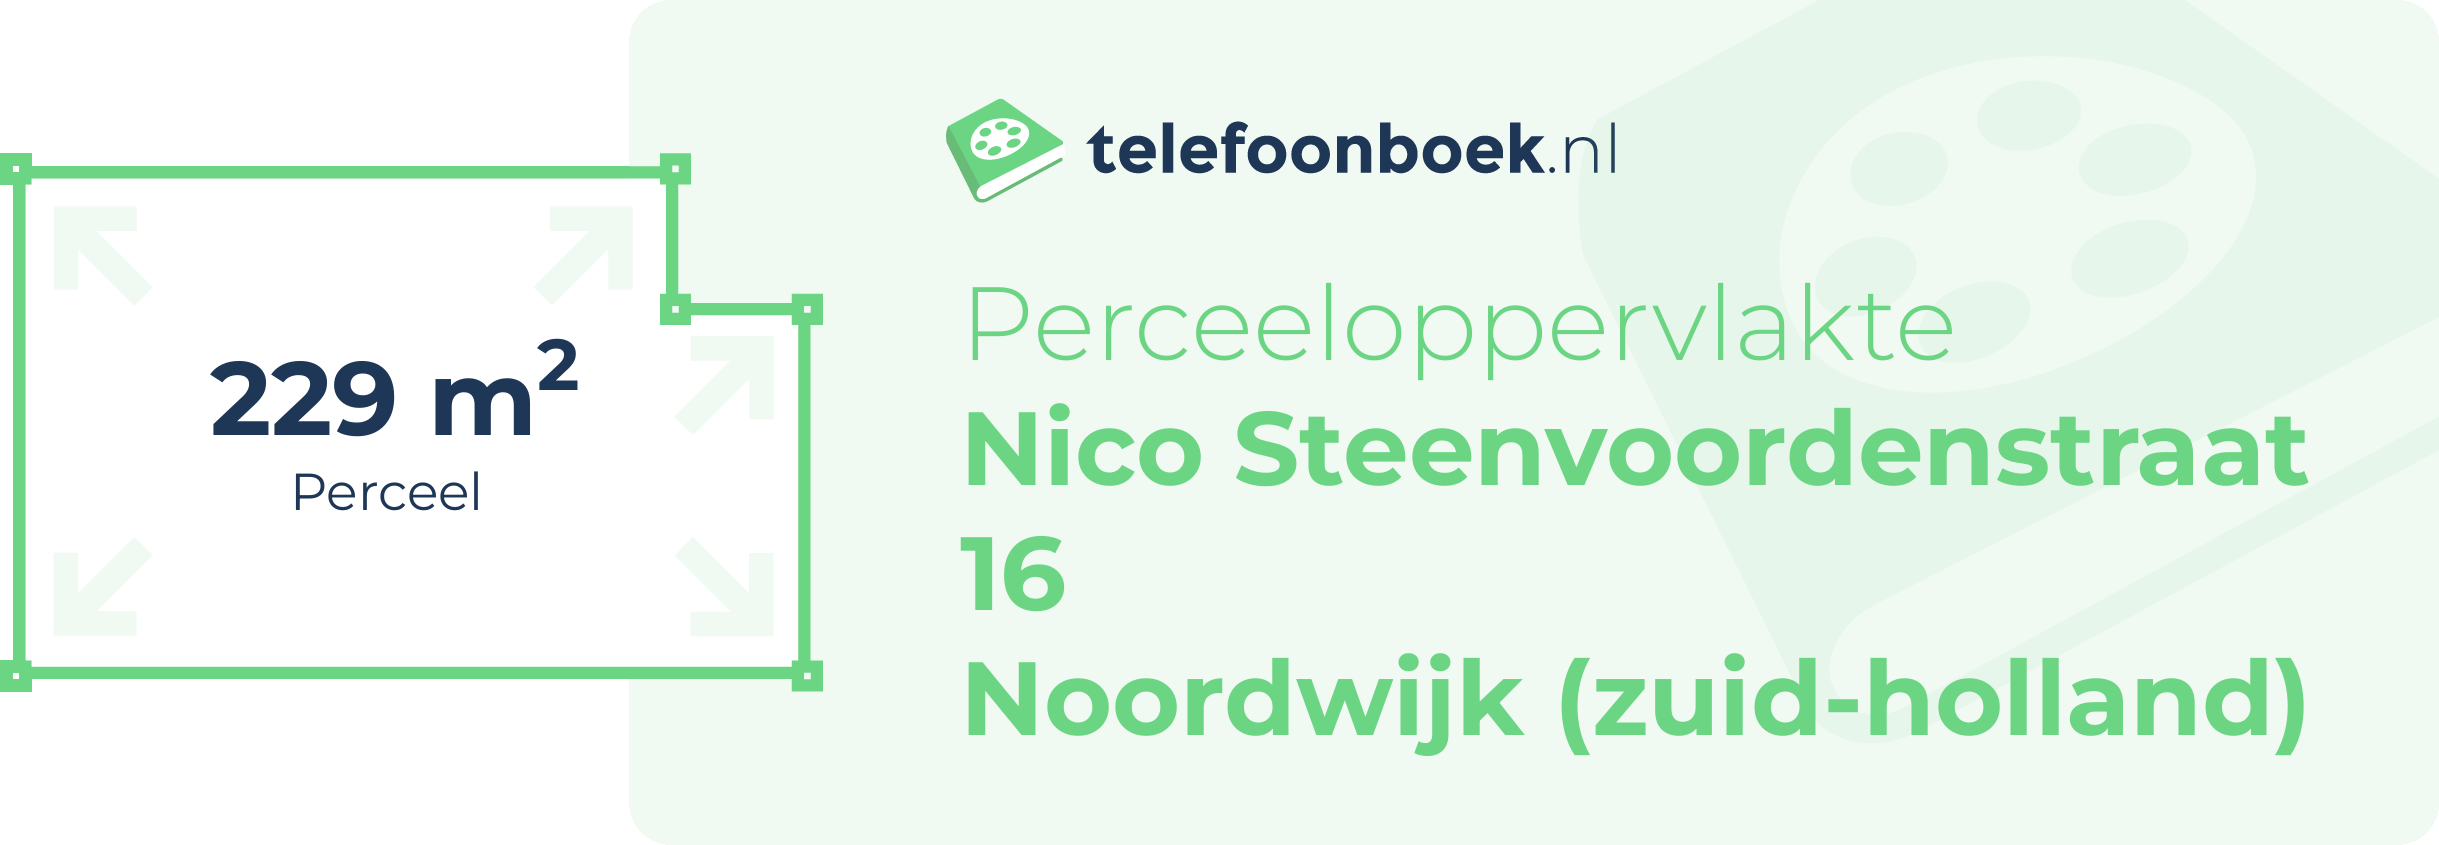 Perceeloppervlakte Nico Steenvoordenstraat 16 Noordwijk (Zuid-Holland)